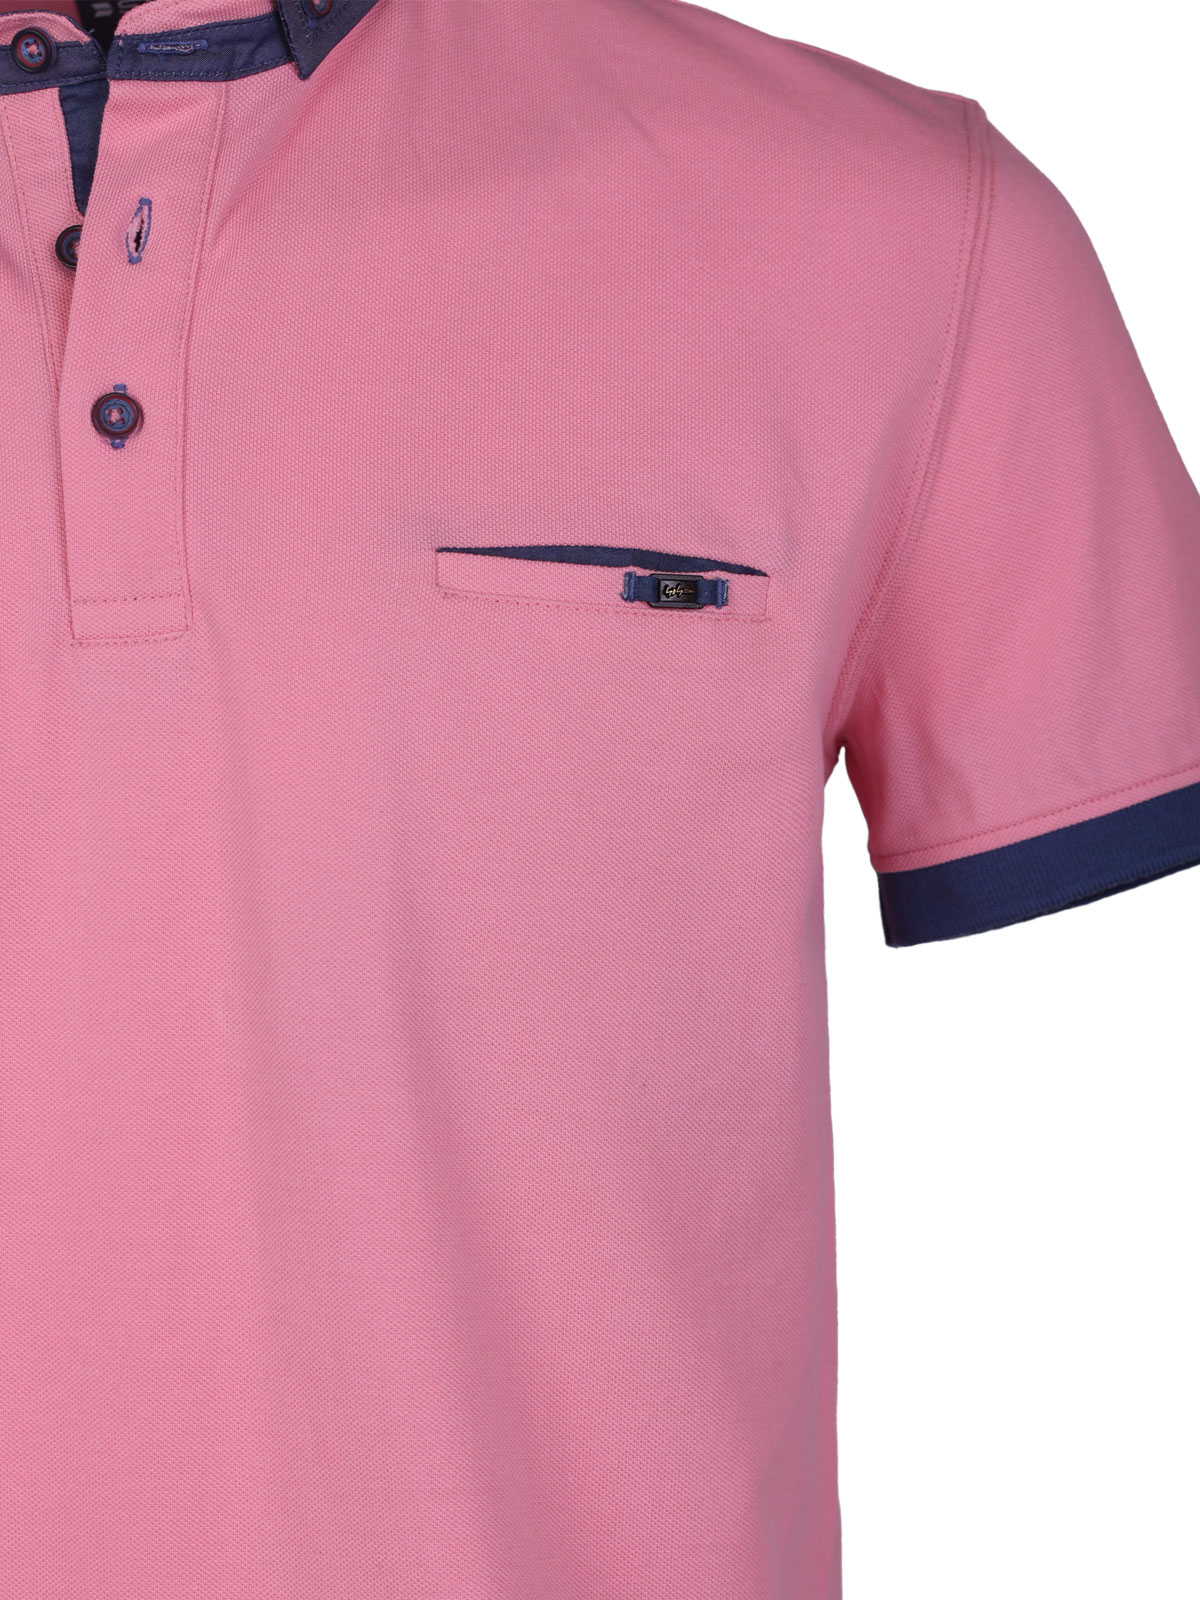 Μπλούζα σε ροζ χρώμα με τζιν γιακά - 93430 € 42.74 img3